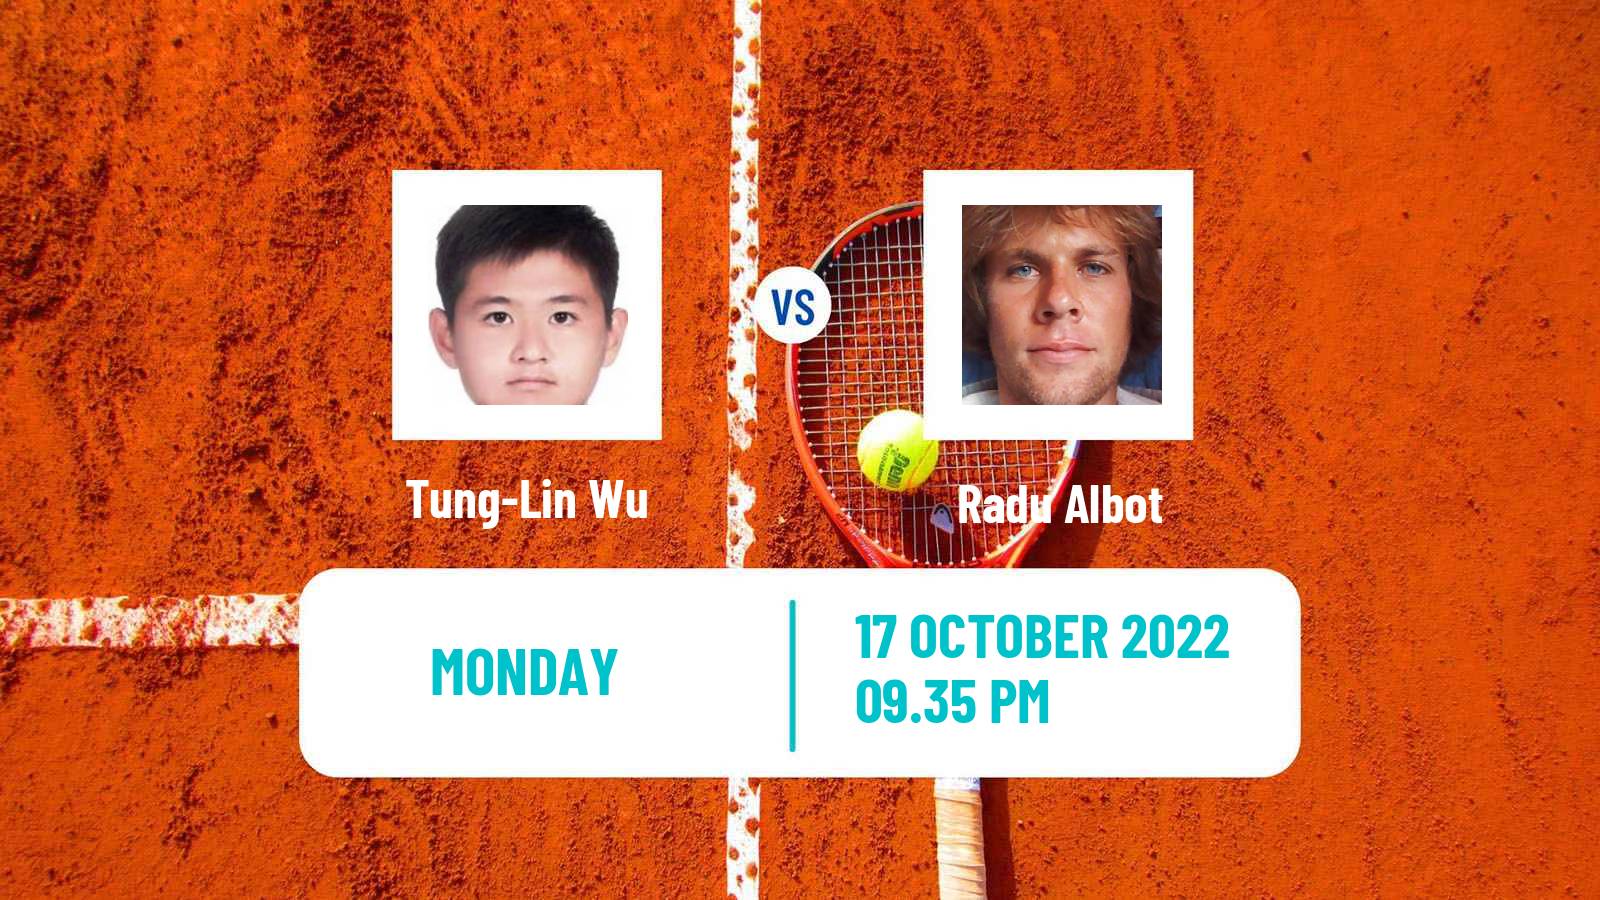 Tennis ATP Challenger Tung-Lin Wu - Radu Albot